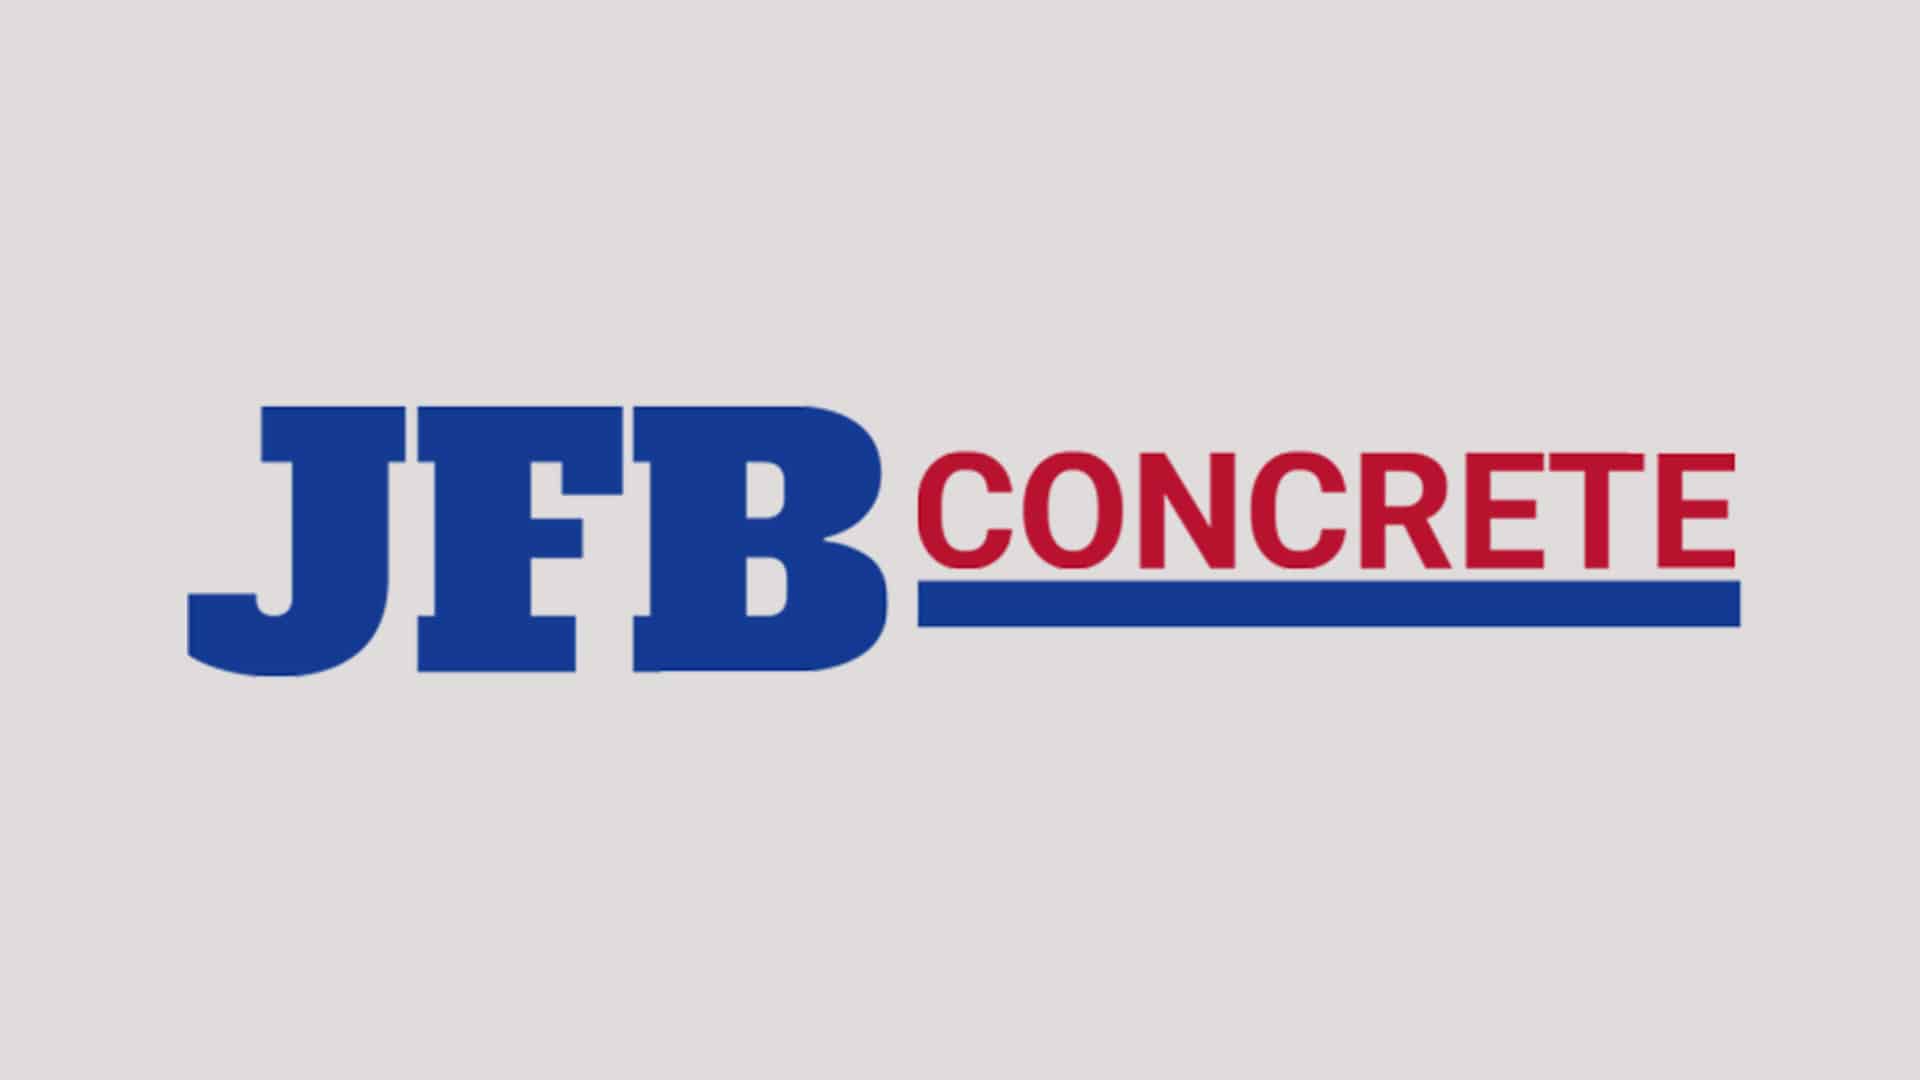 Jfb Concrete